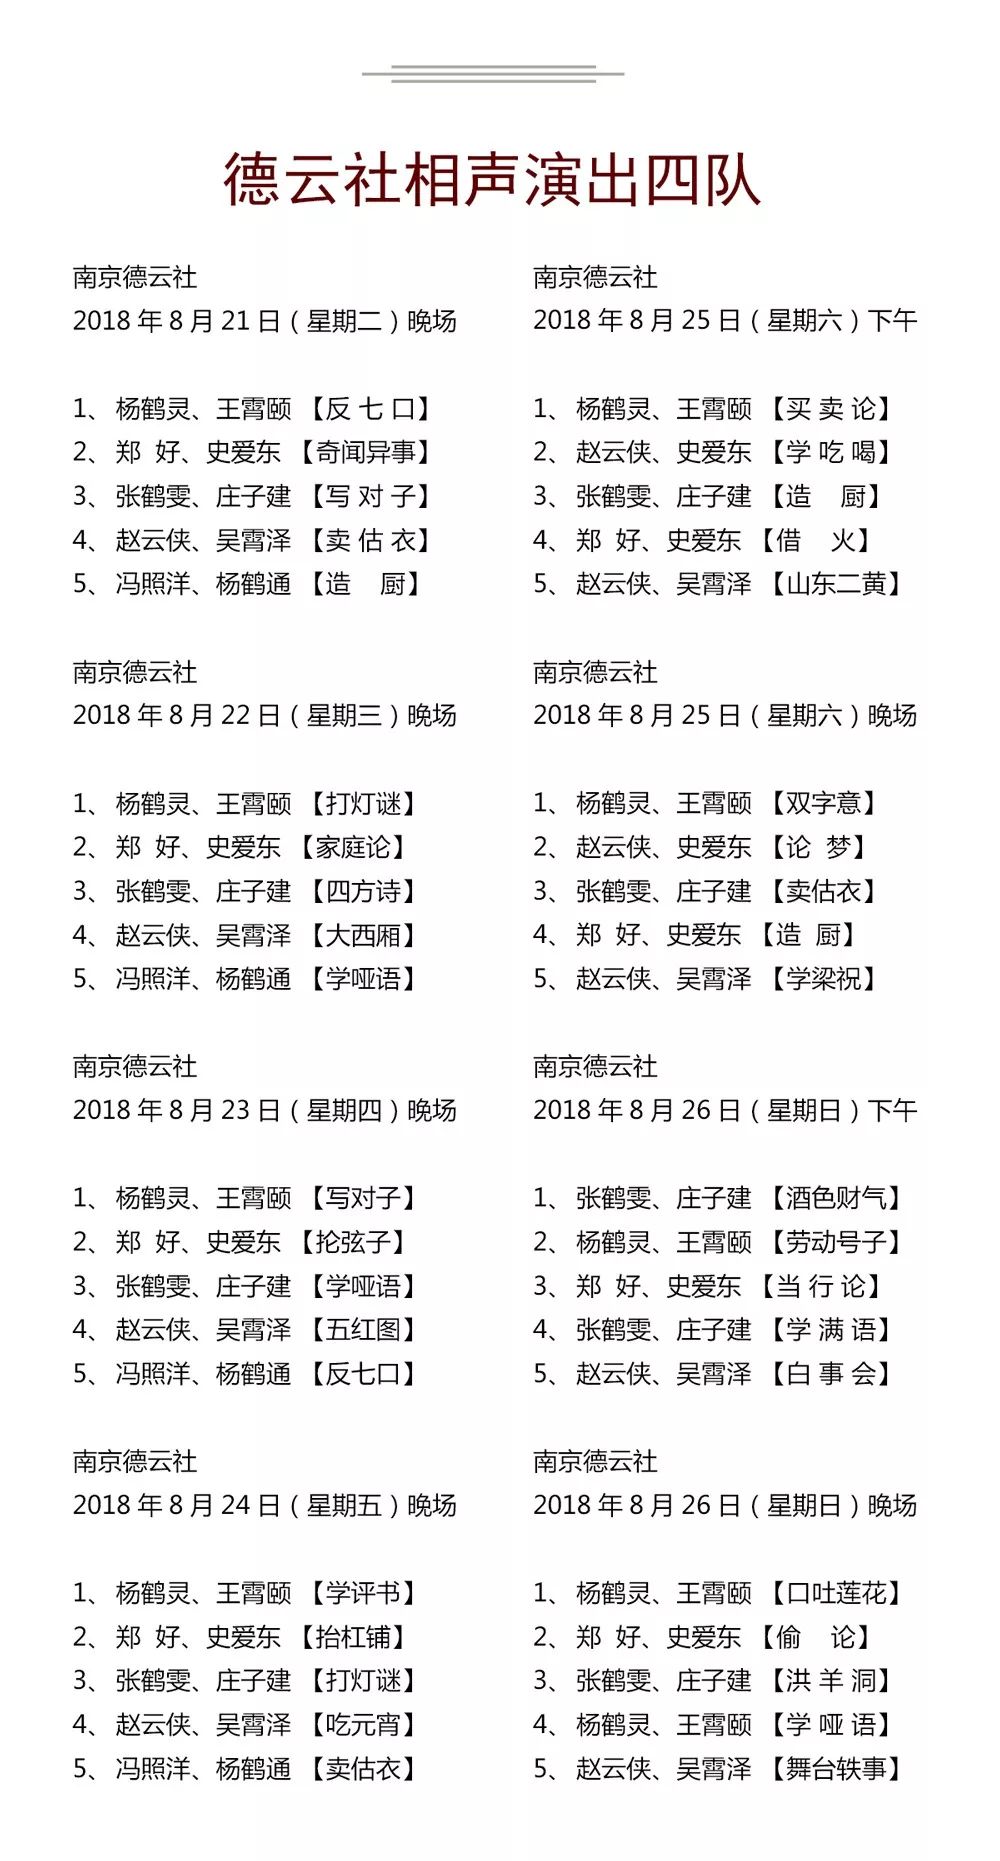 德云社演出节目单（2018年8月20日-8月26日）